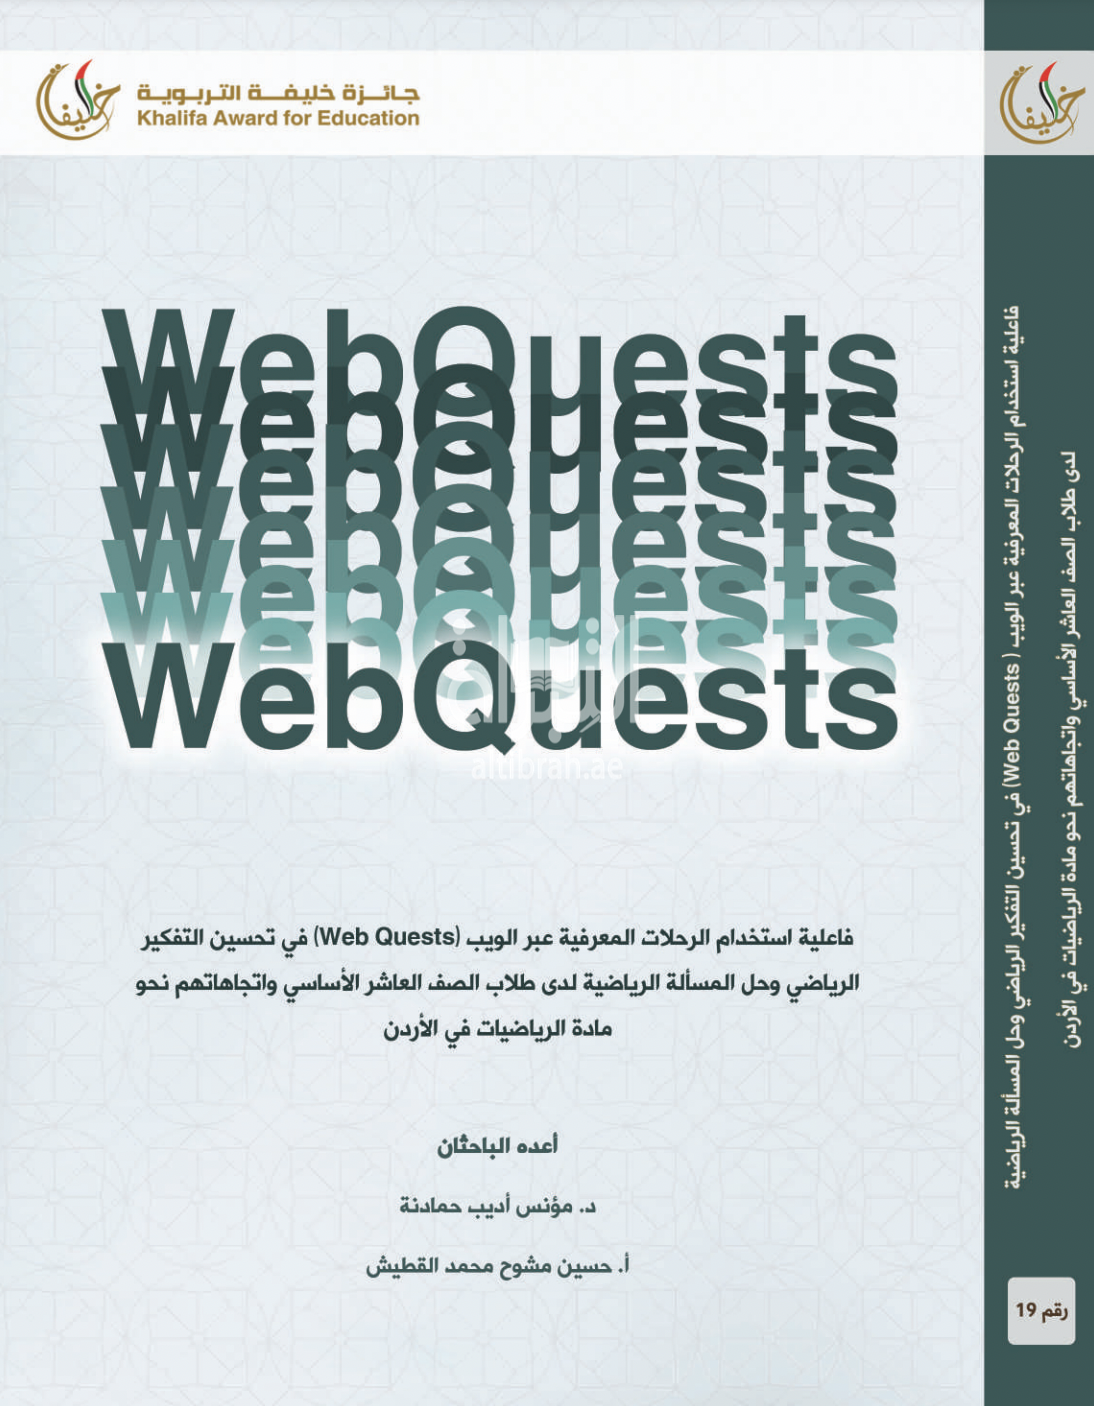 فاعلية استخدام الرحلات المعرفية عبر الويب ( Web Quests ) في تحسين التفكير الرياضي وحل المسألة الرياضية لدى طلاب الصف العاشر الأساسي واتجاهاتهم نحو مادة الرياضيات في الأردن